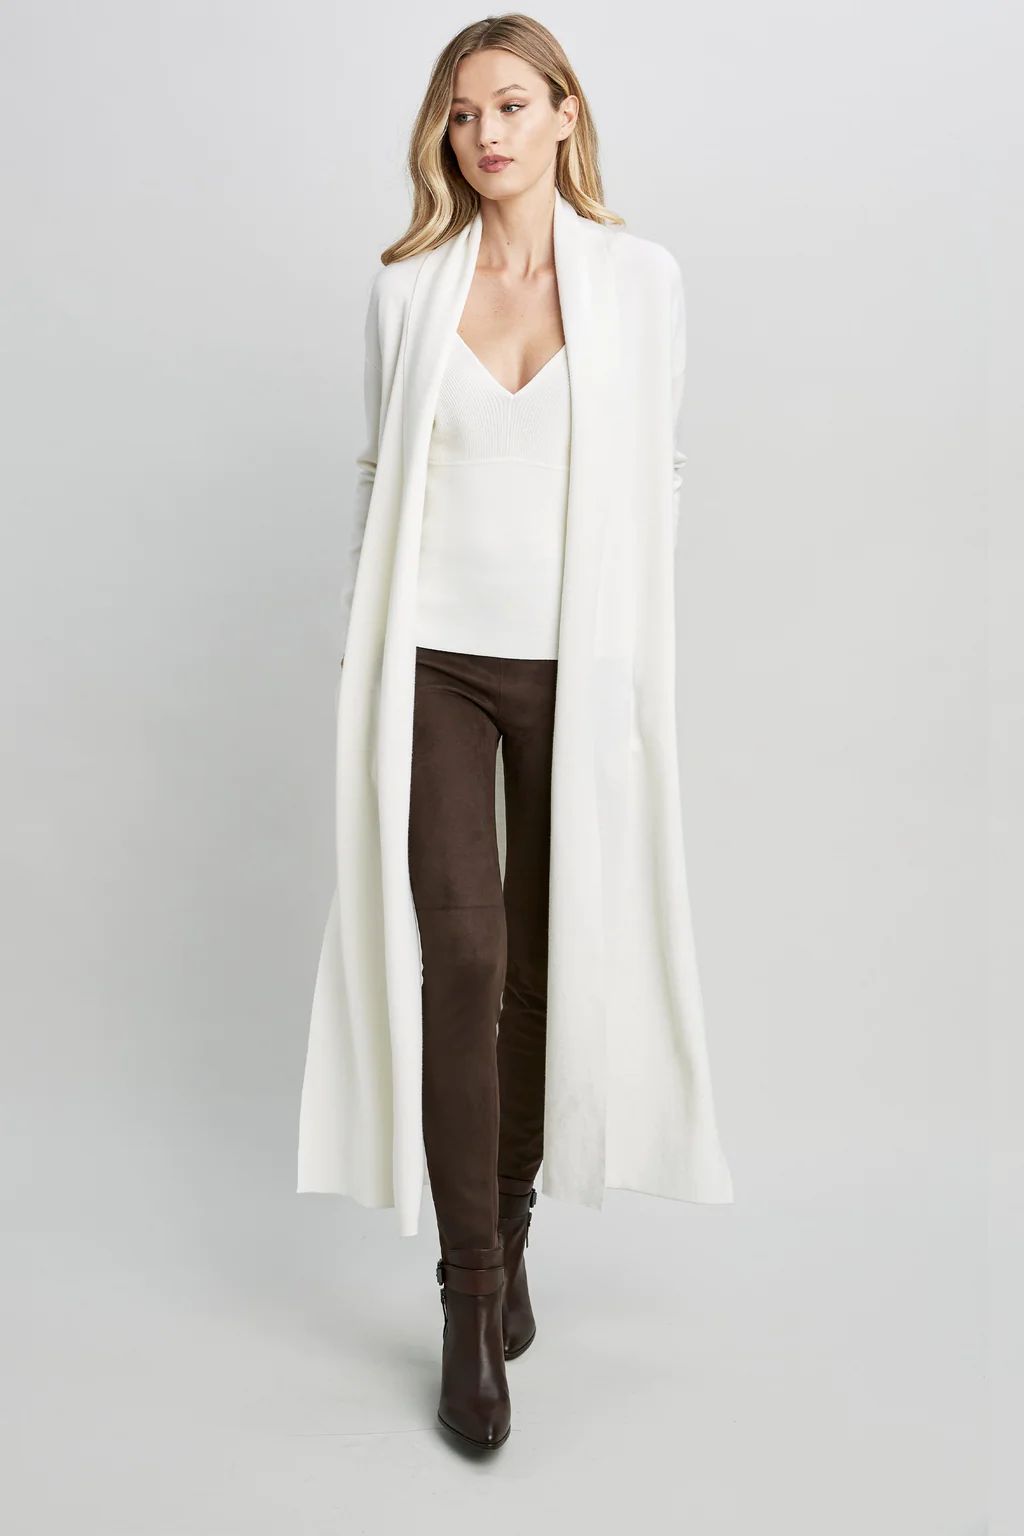 Long Sleeve Merino Wool Duster With High Side Slits | Elie Tahari